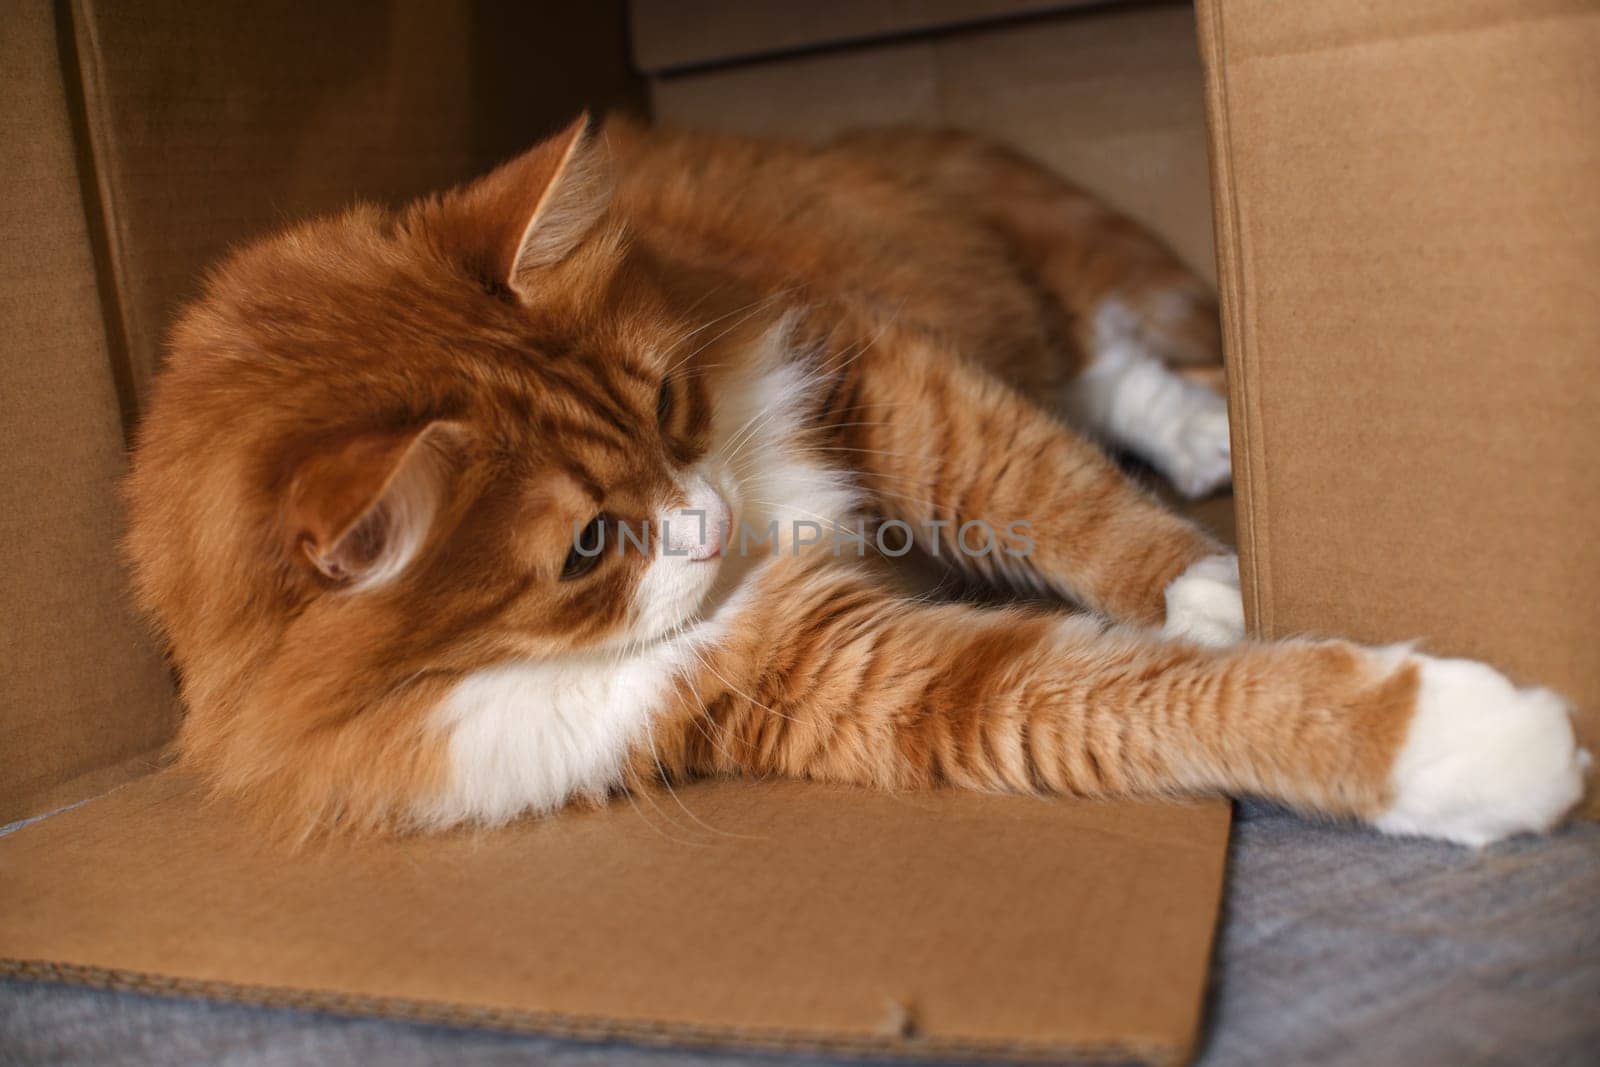 A red cat lies in a cardboard box. Close-up